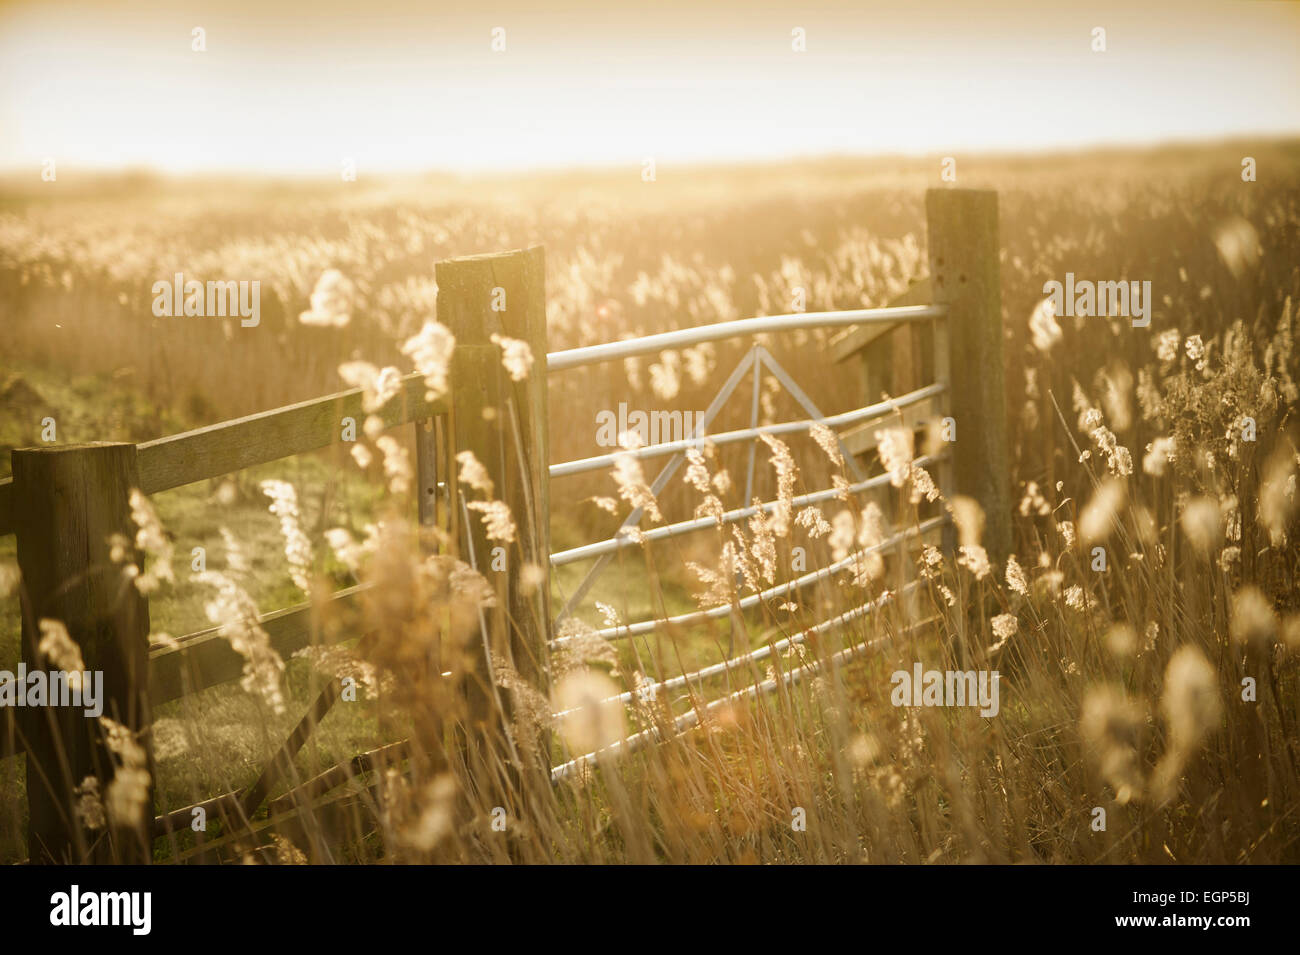 Roseaux communs, Phragmites australis dans les champs avec une clôture en bois et metal gate baclit d'une lumière dorée. La Nostalgie des couleurs chaudes. Manipuler les couleurs. Banque D'Images